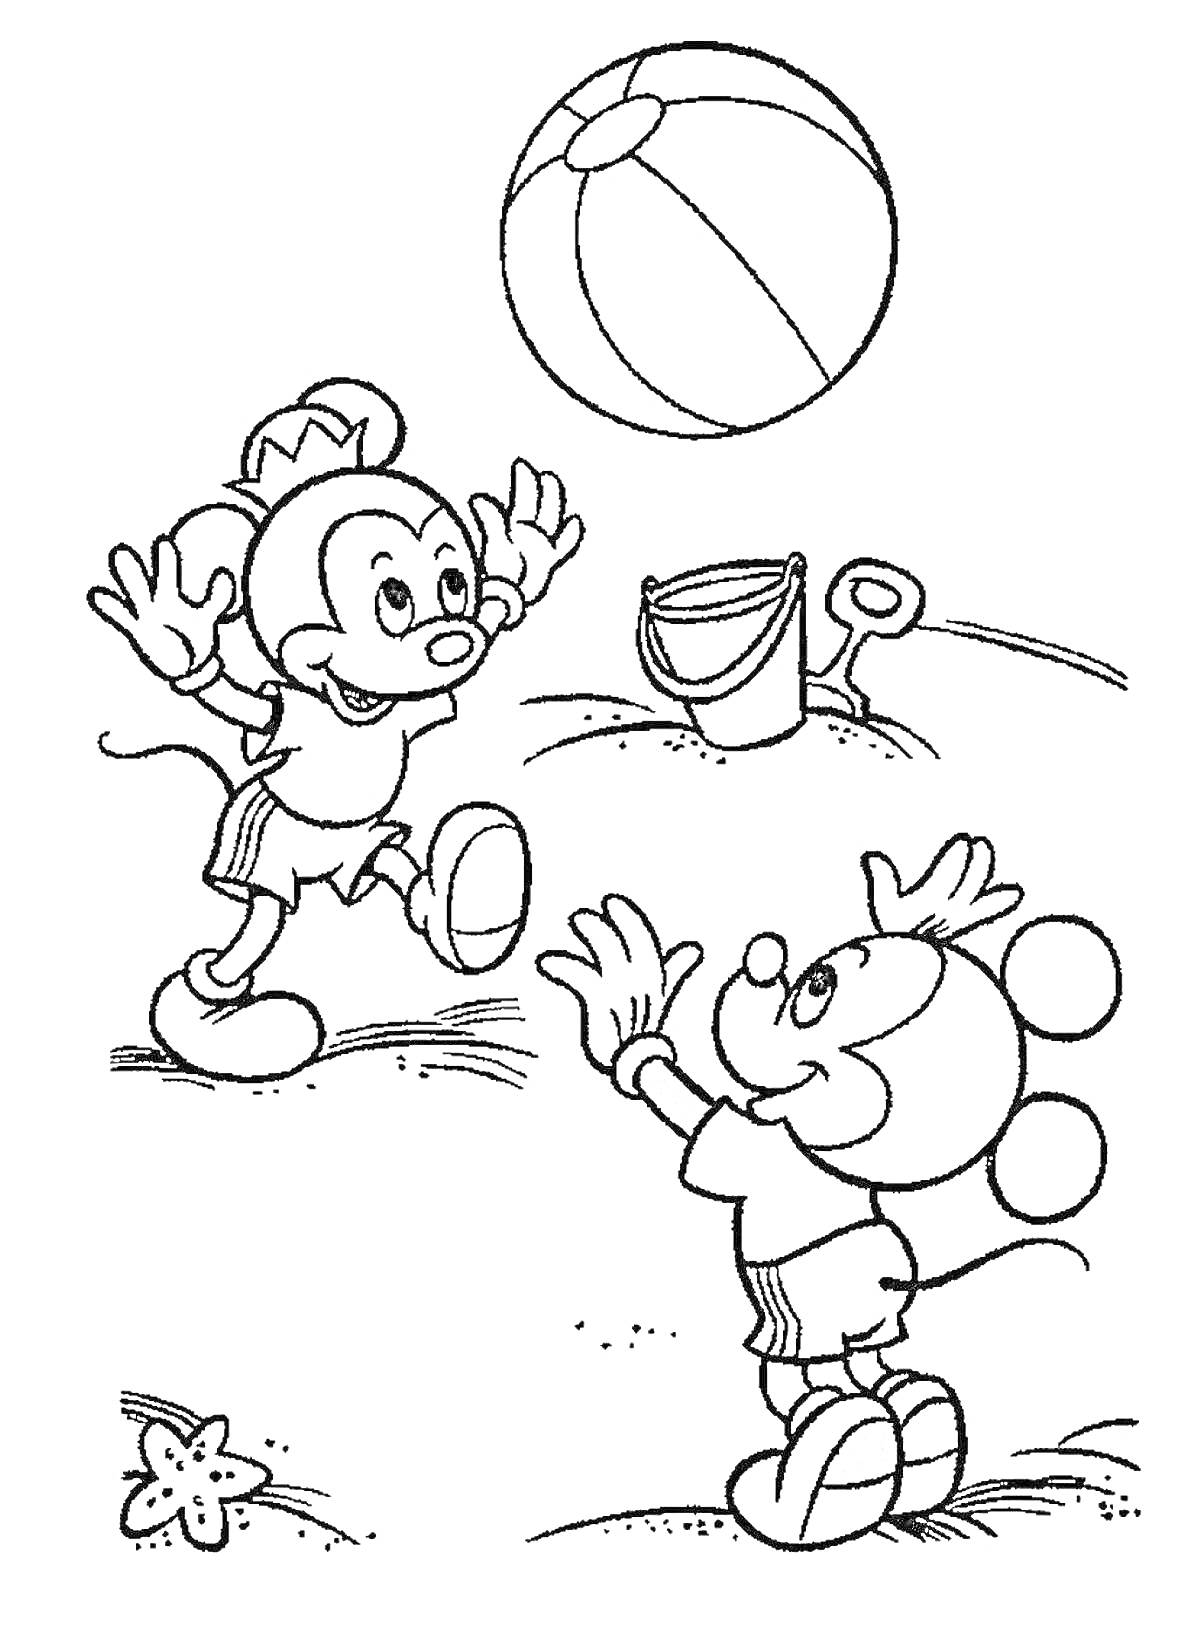 РаскраскаДве мышки, играющие с пляжным мячом на пляже, рядом ведро и лопатка